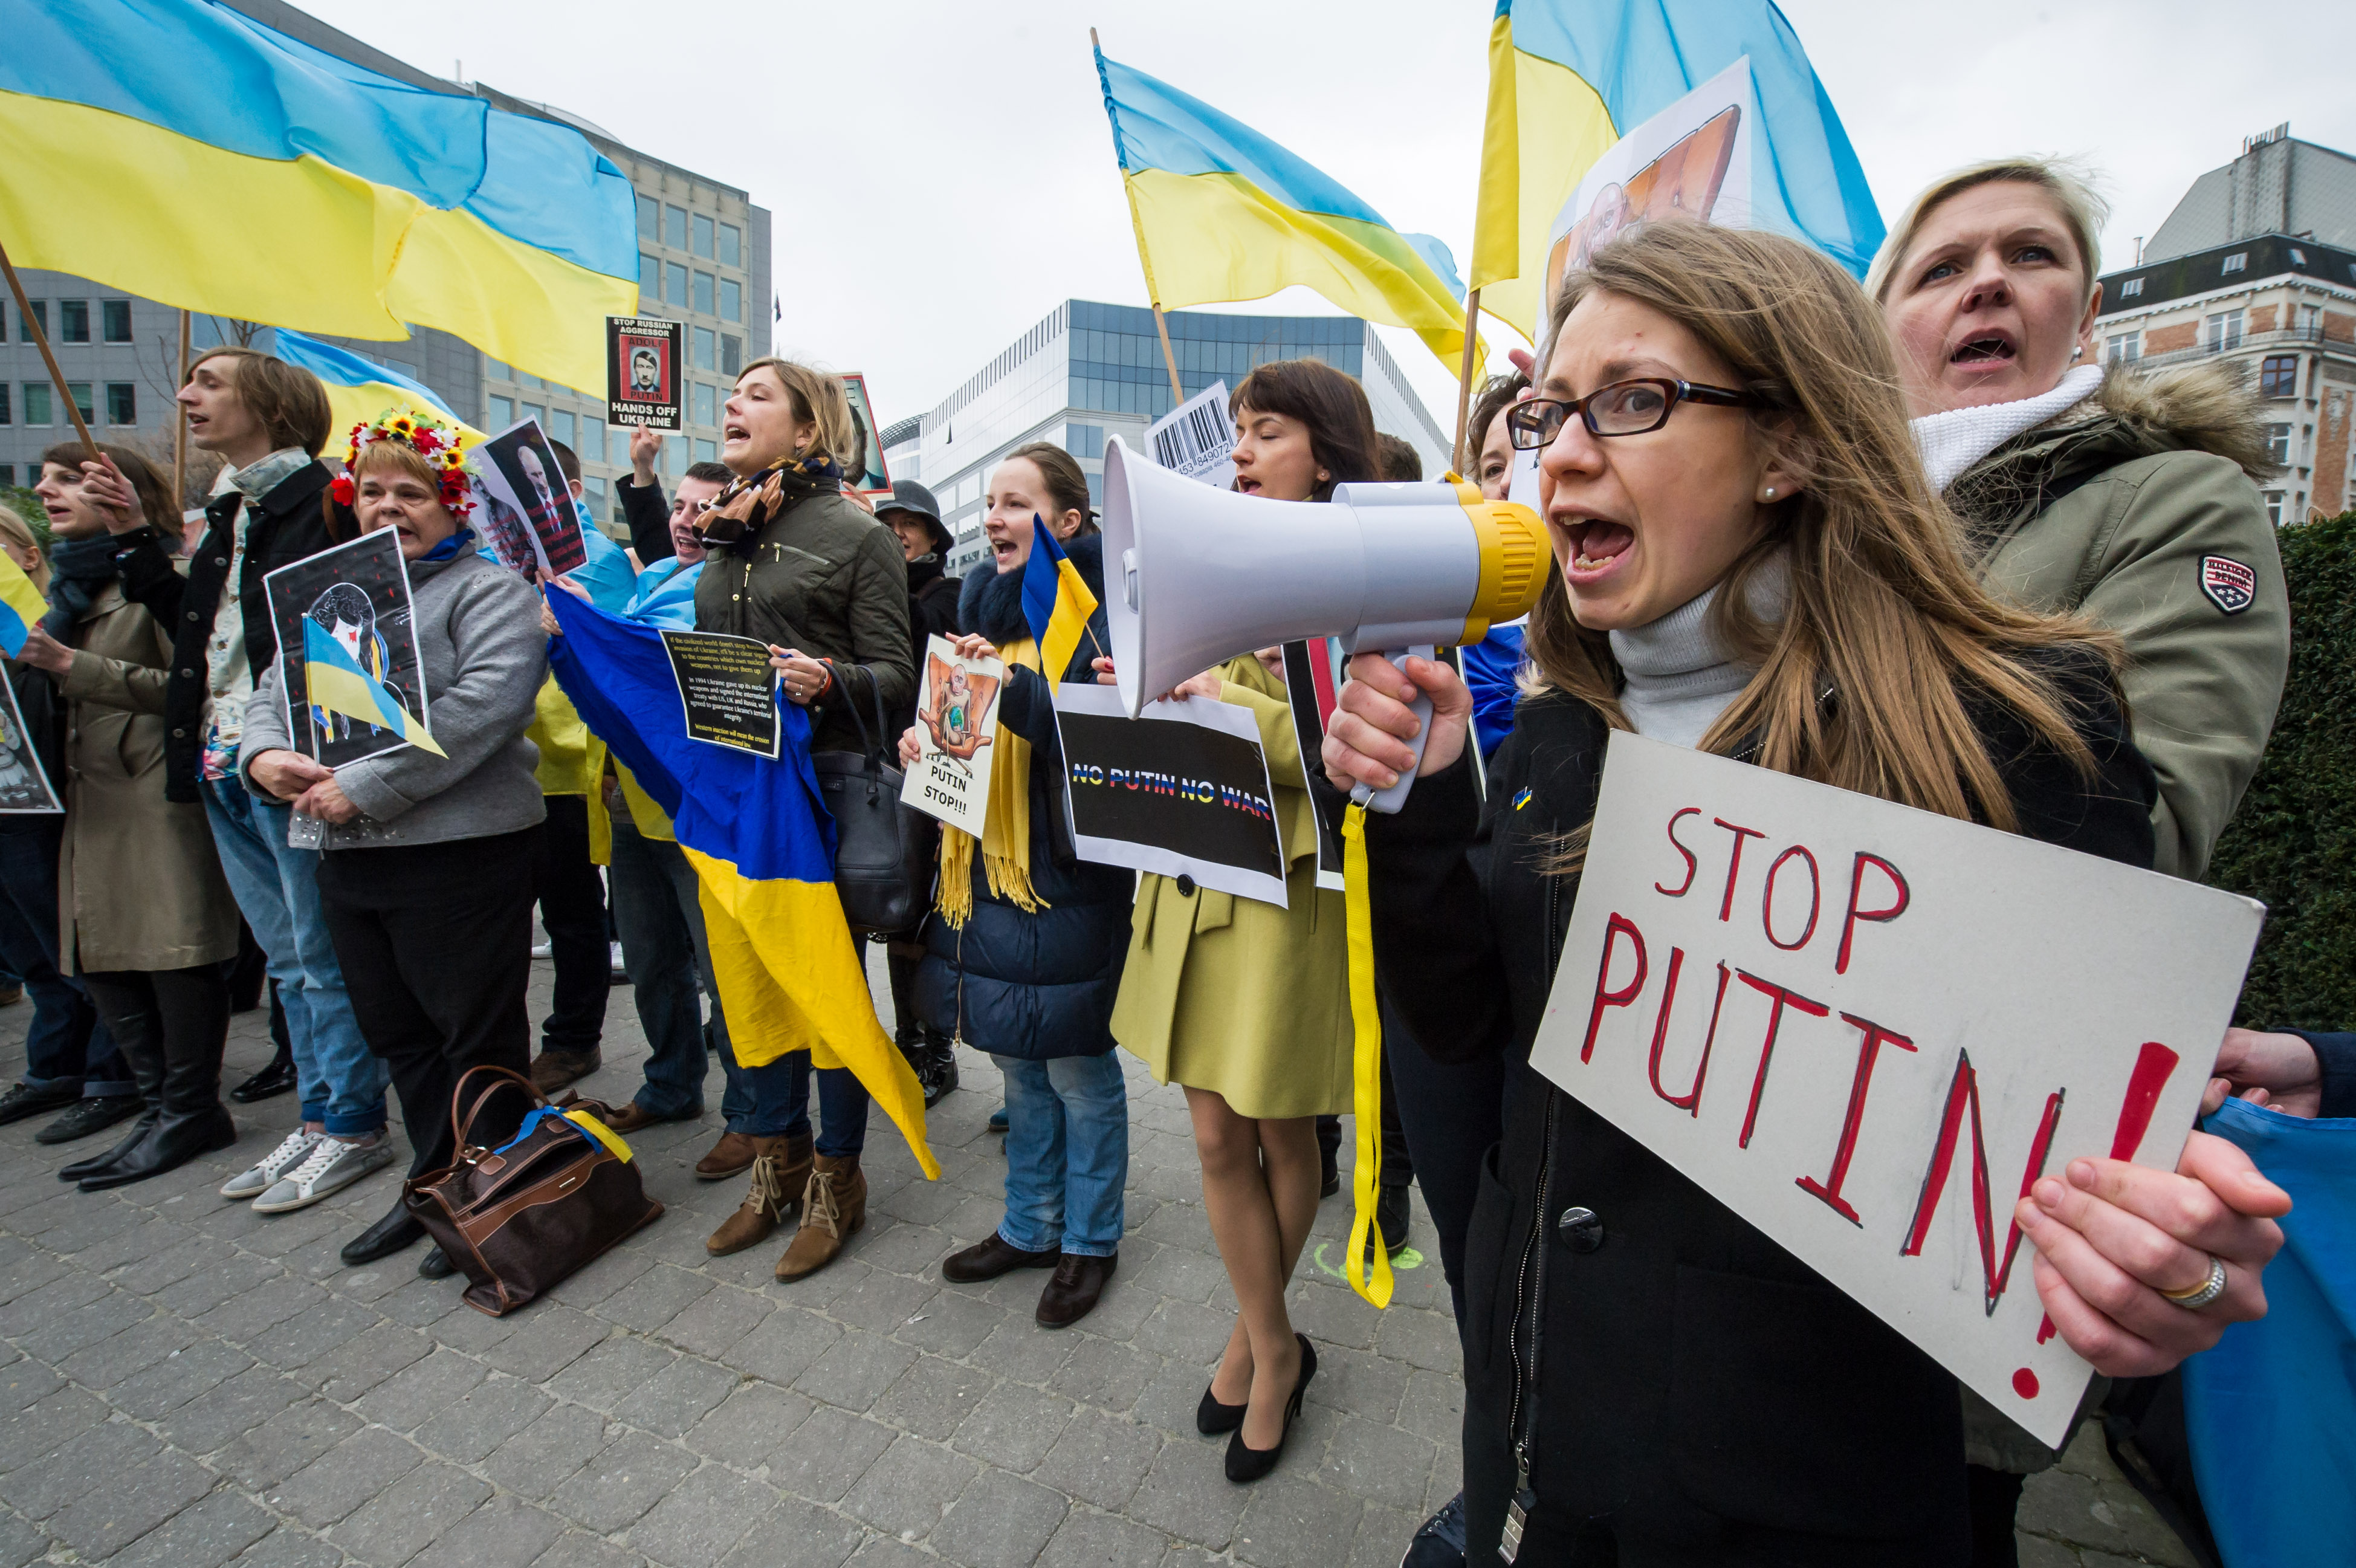 «Адские» санкции и их украинские любители